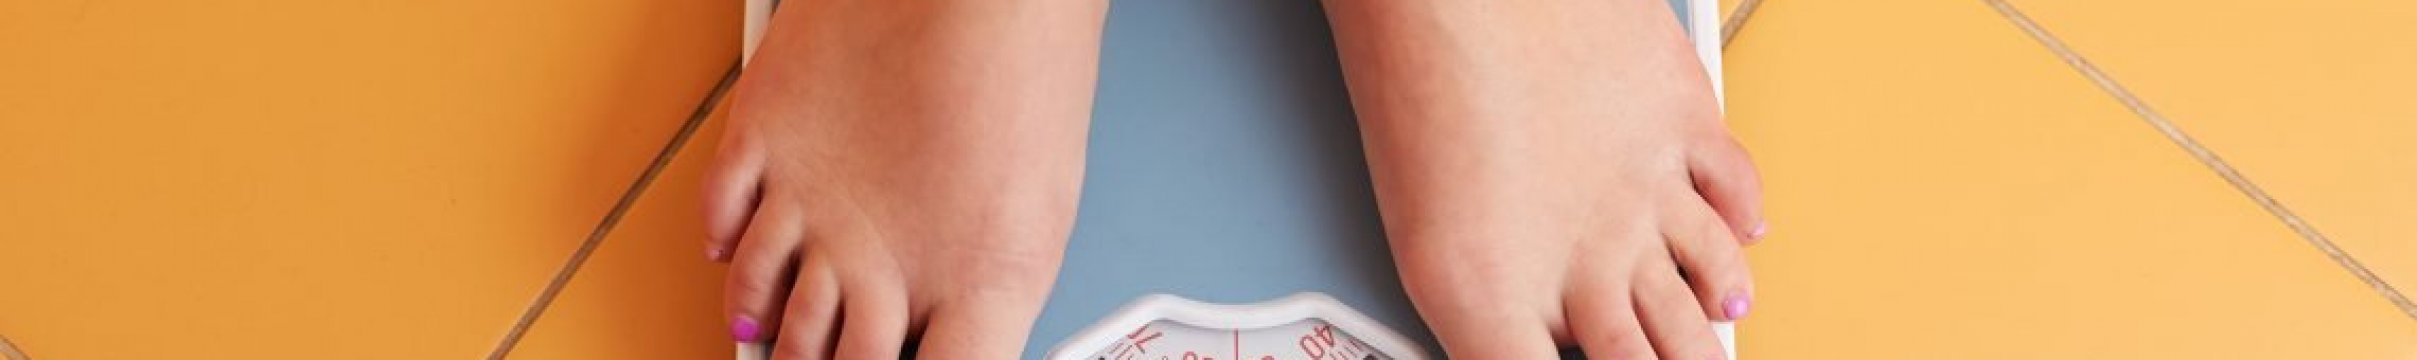 Как рассчитать нормальный вес: самые точные методы с формулами и примерами